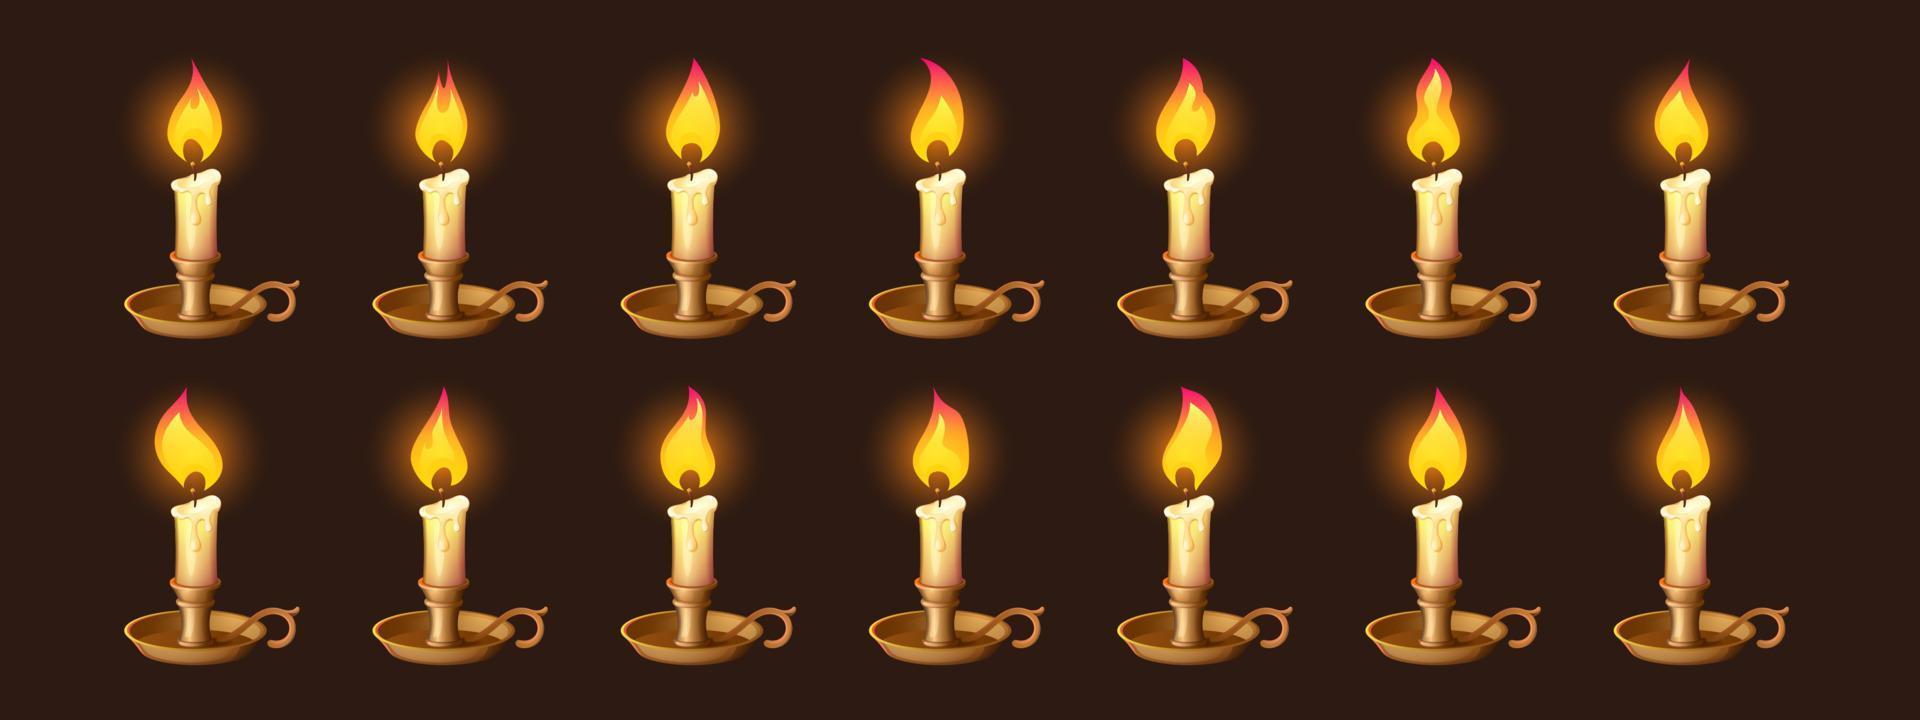 desenhos animados queimando velas em animação de castiçal vetor